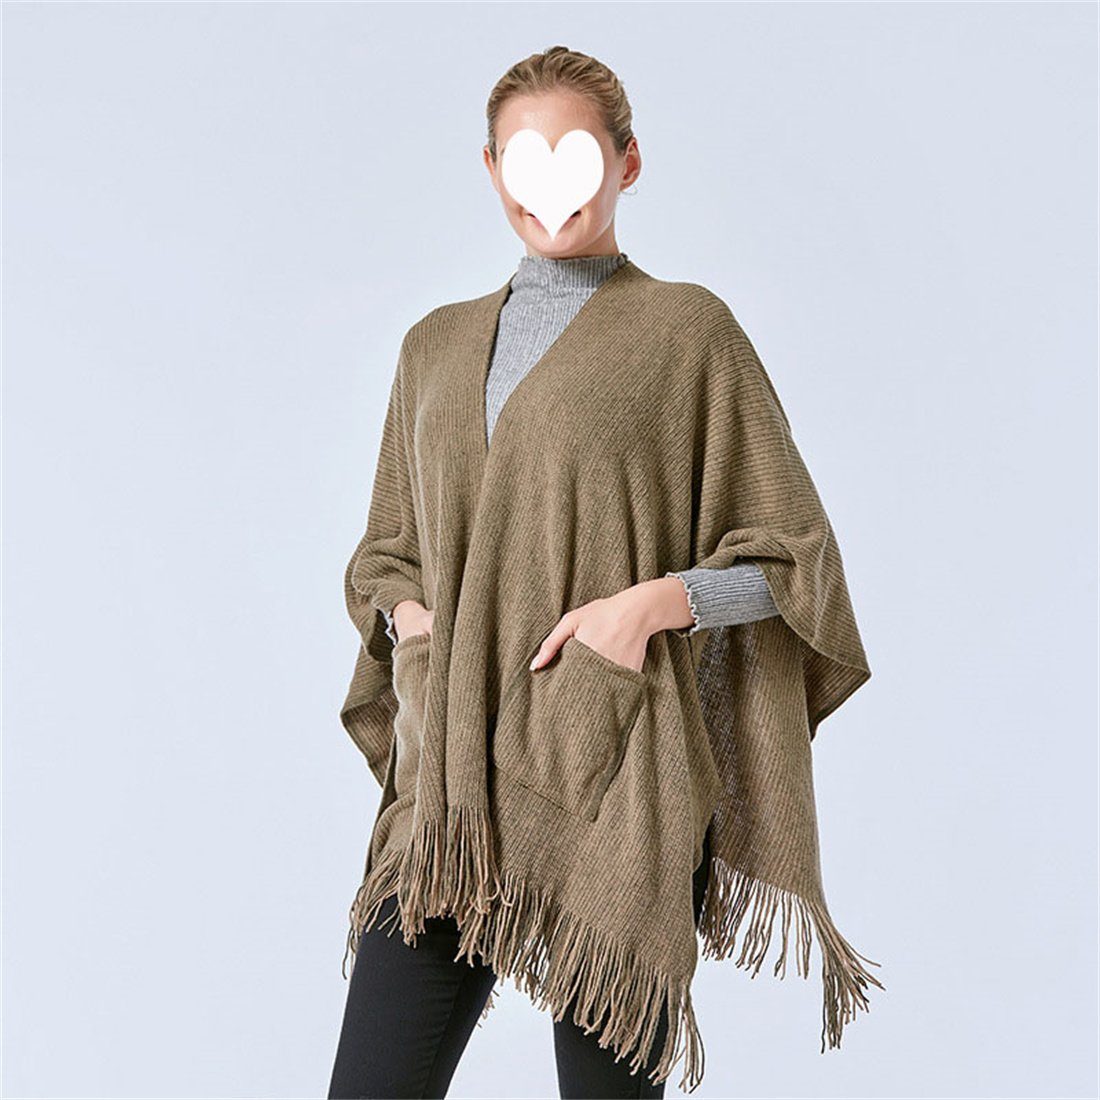 DÖRÖY Modeschal Damen Winter Schal Schal, khaki einfarbig warme Retro Umhang Tasche Mode